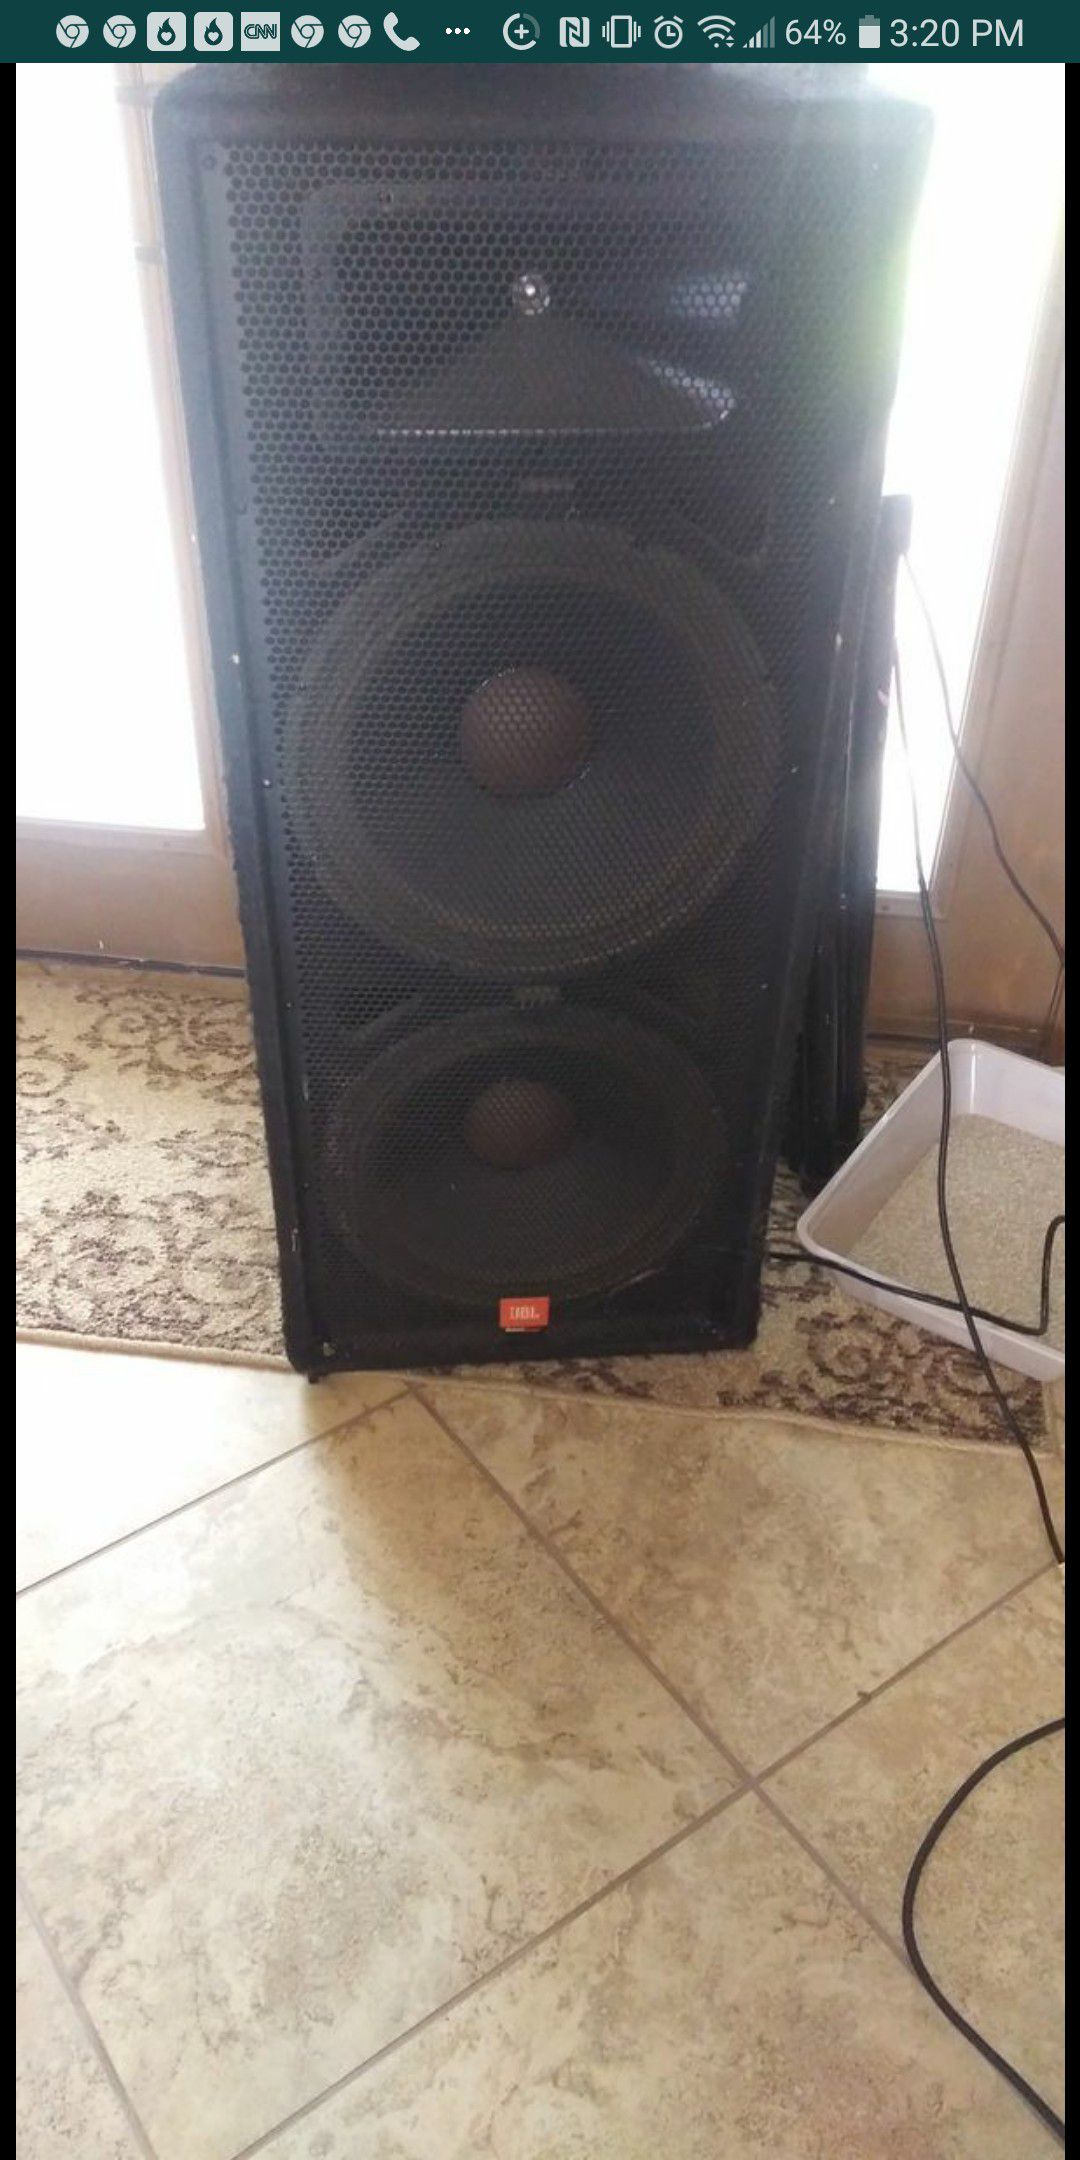 Jbl speaker set